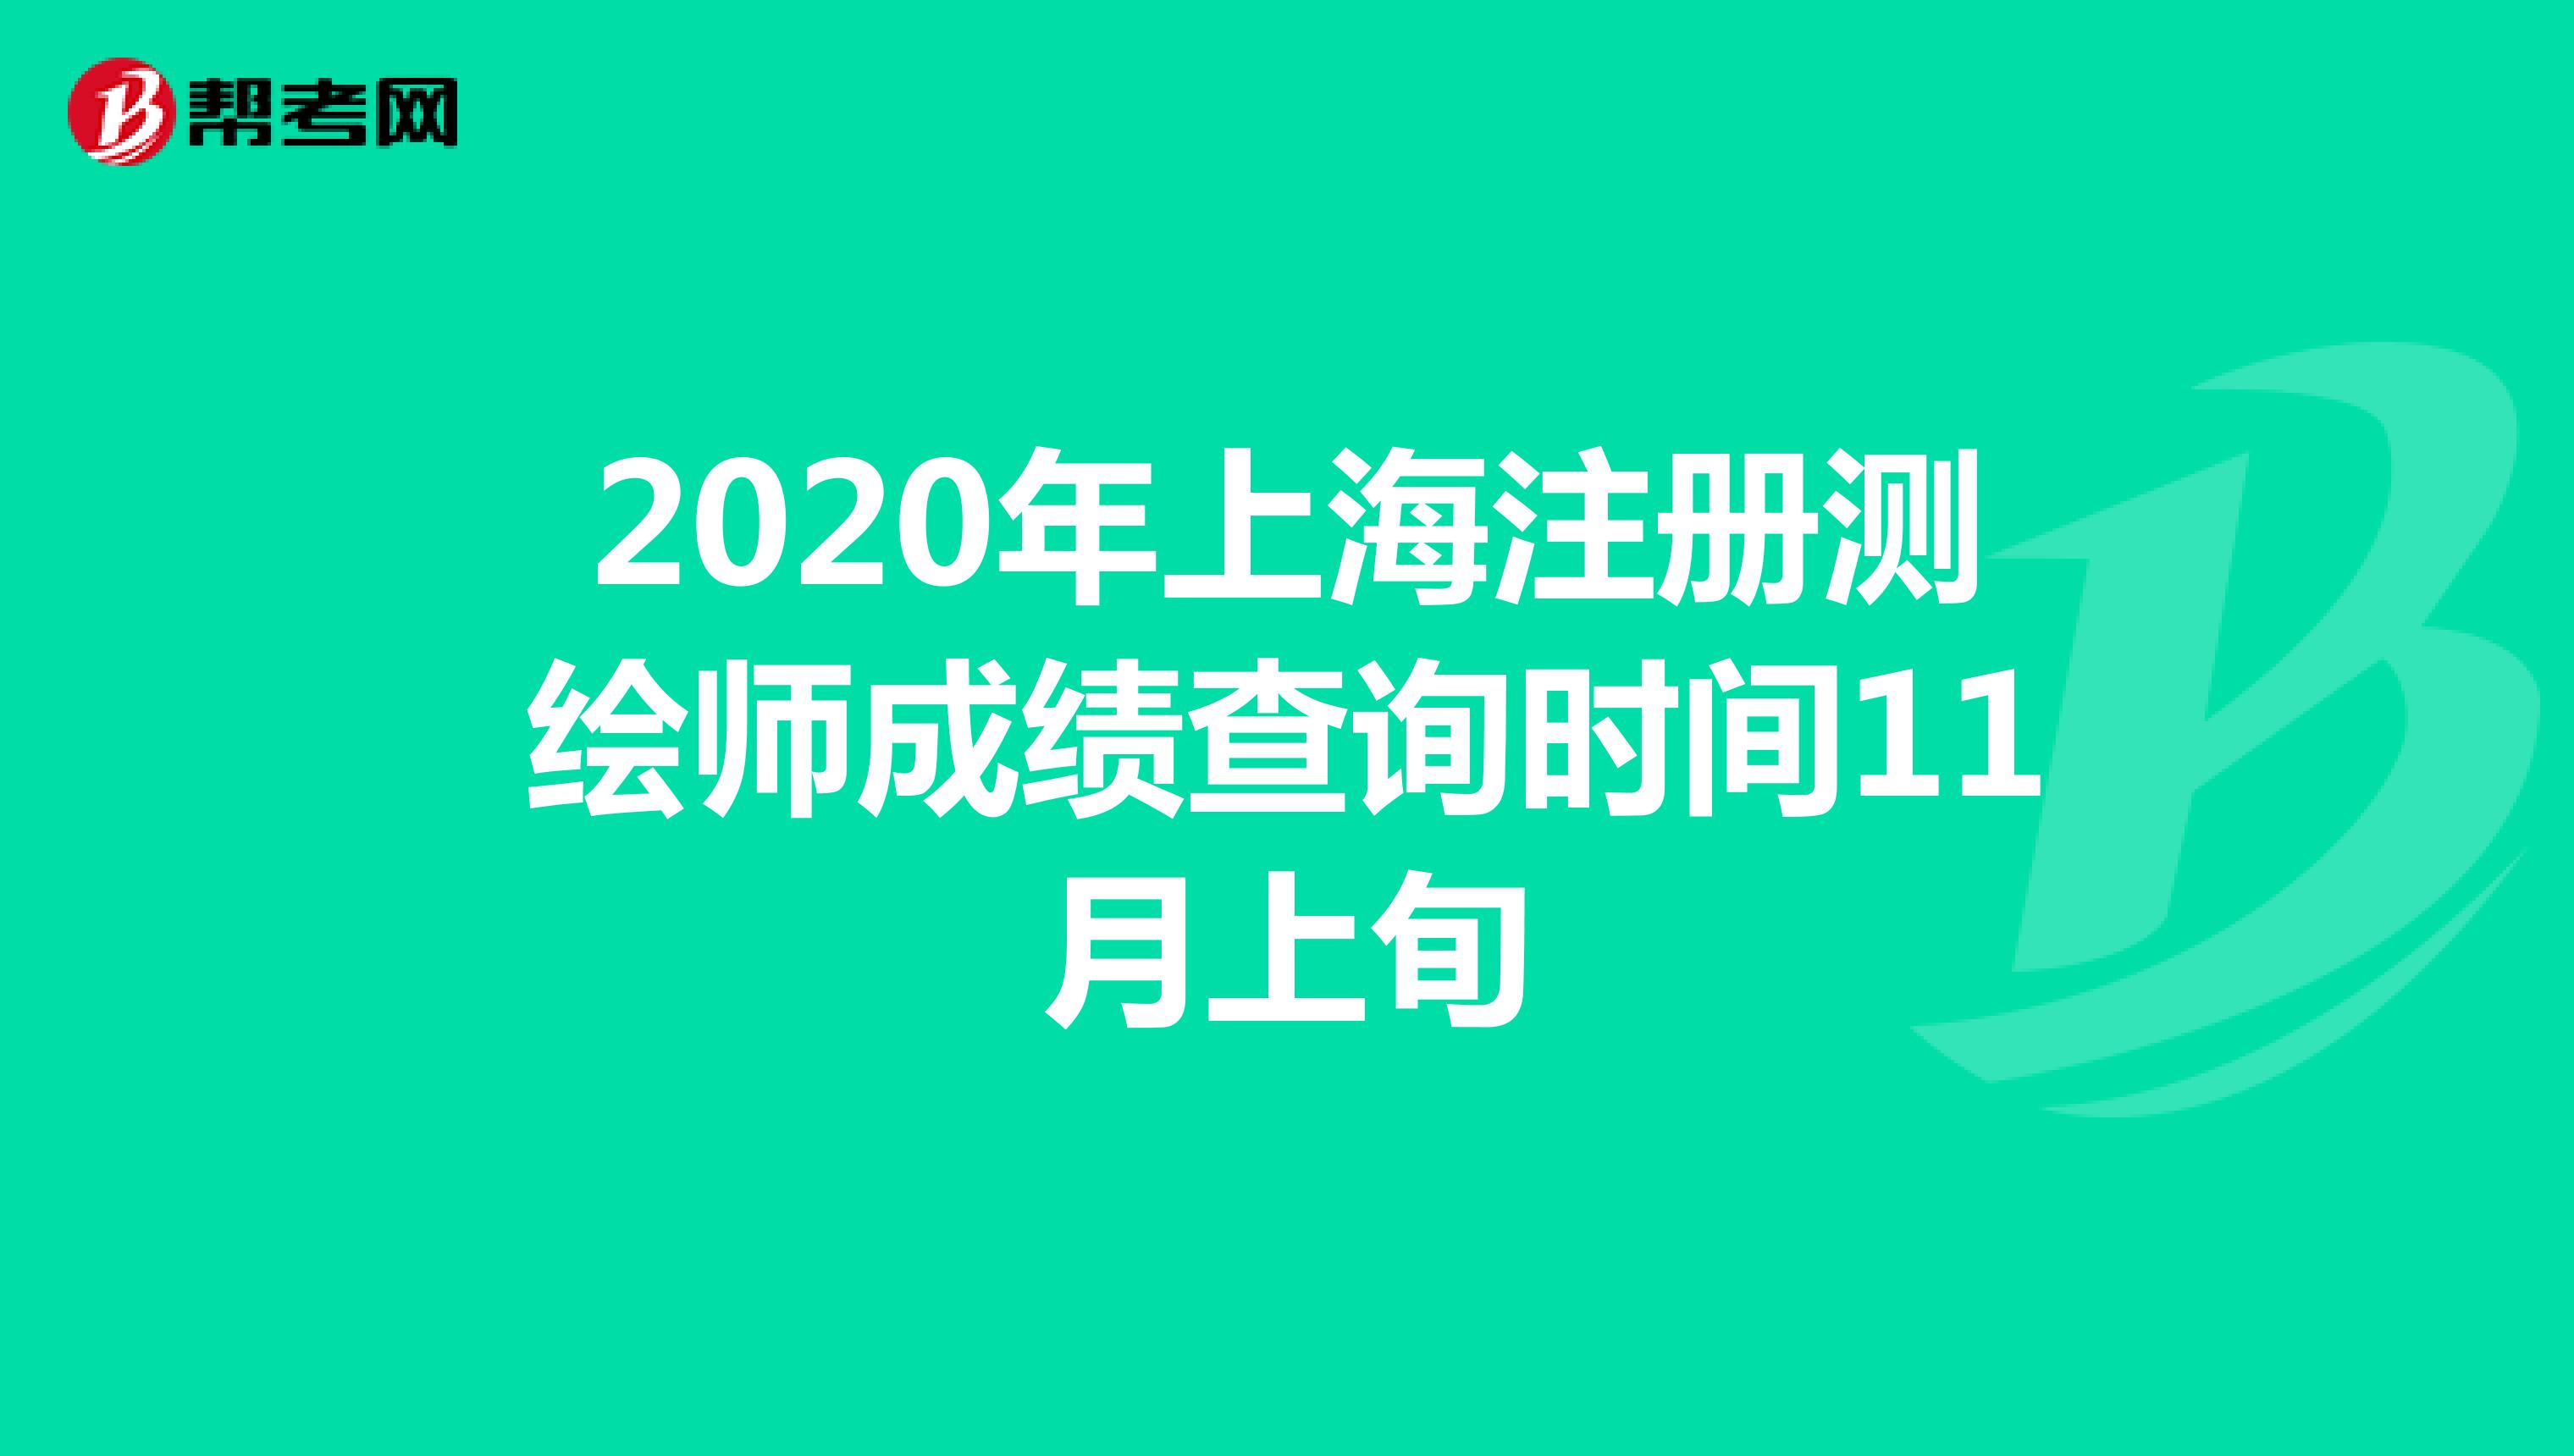 2020年上海注册测绘师成绩查询时间11月上旬